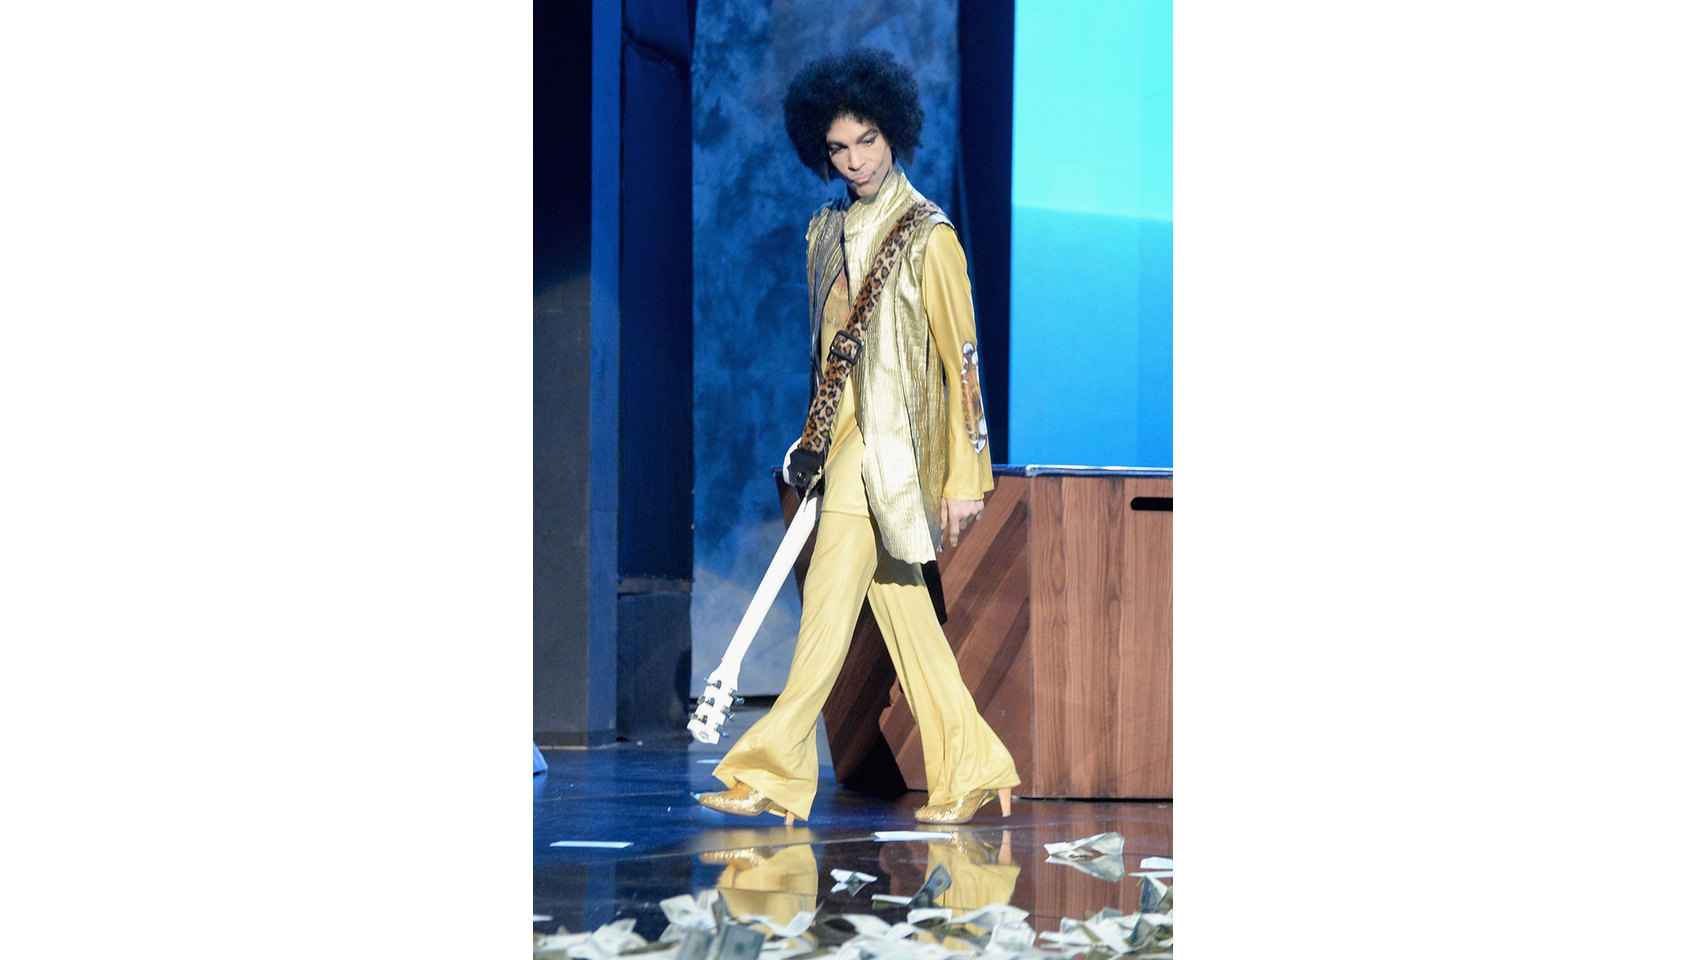 Prince, en una de sus actuaciones, luciendo sus característicos zapatos de tacón.